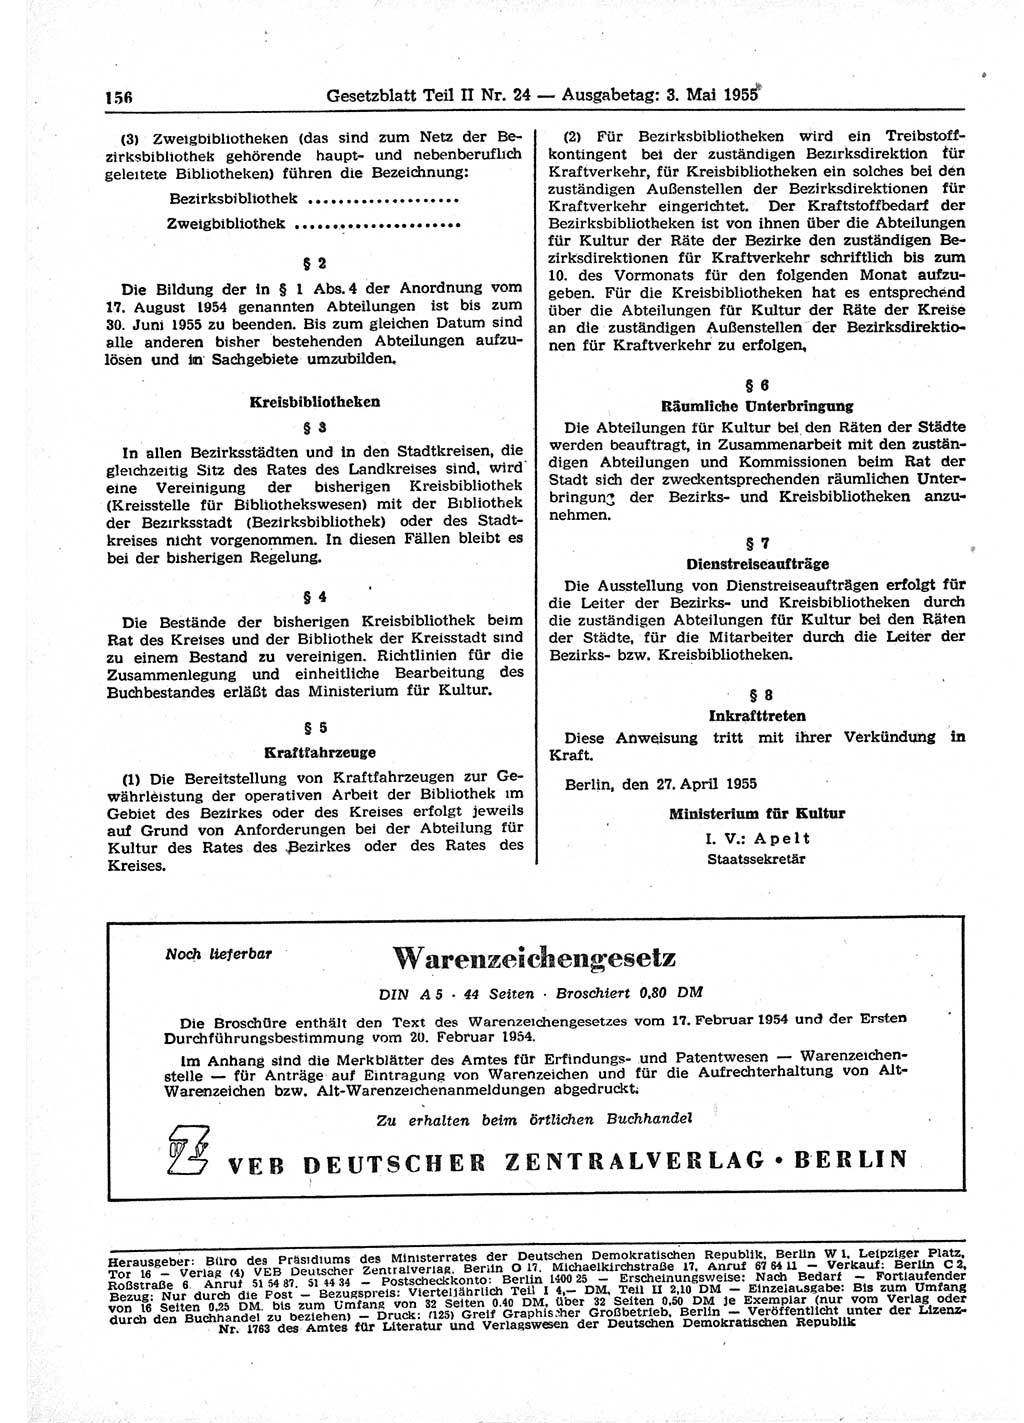 Gesetzblatt (GBl.) der Deutschen Demokratischen Republik (DDR) Teil ⅠⅠ 1955, Seite 156 (GBl. DDR ⅠⅠ 1955, S. 156)